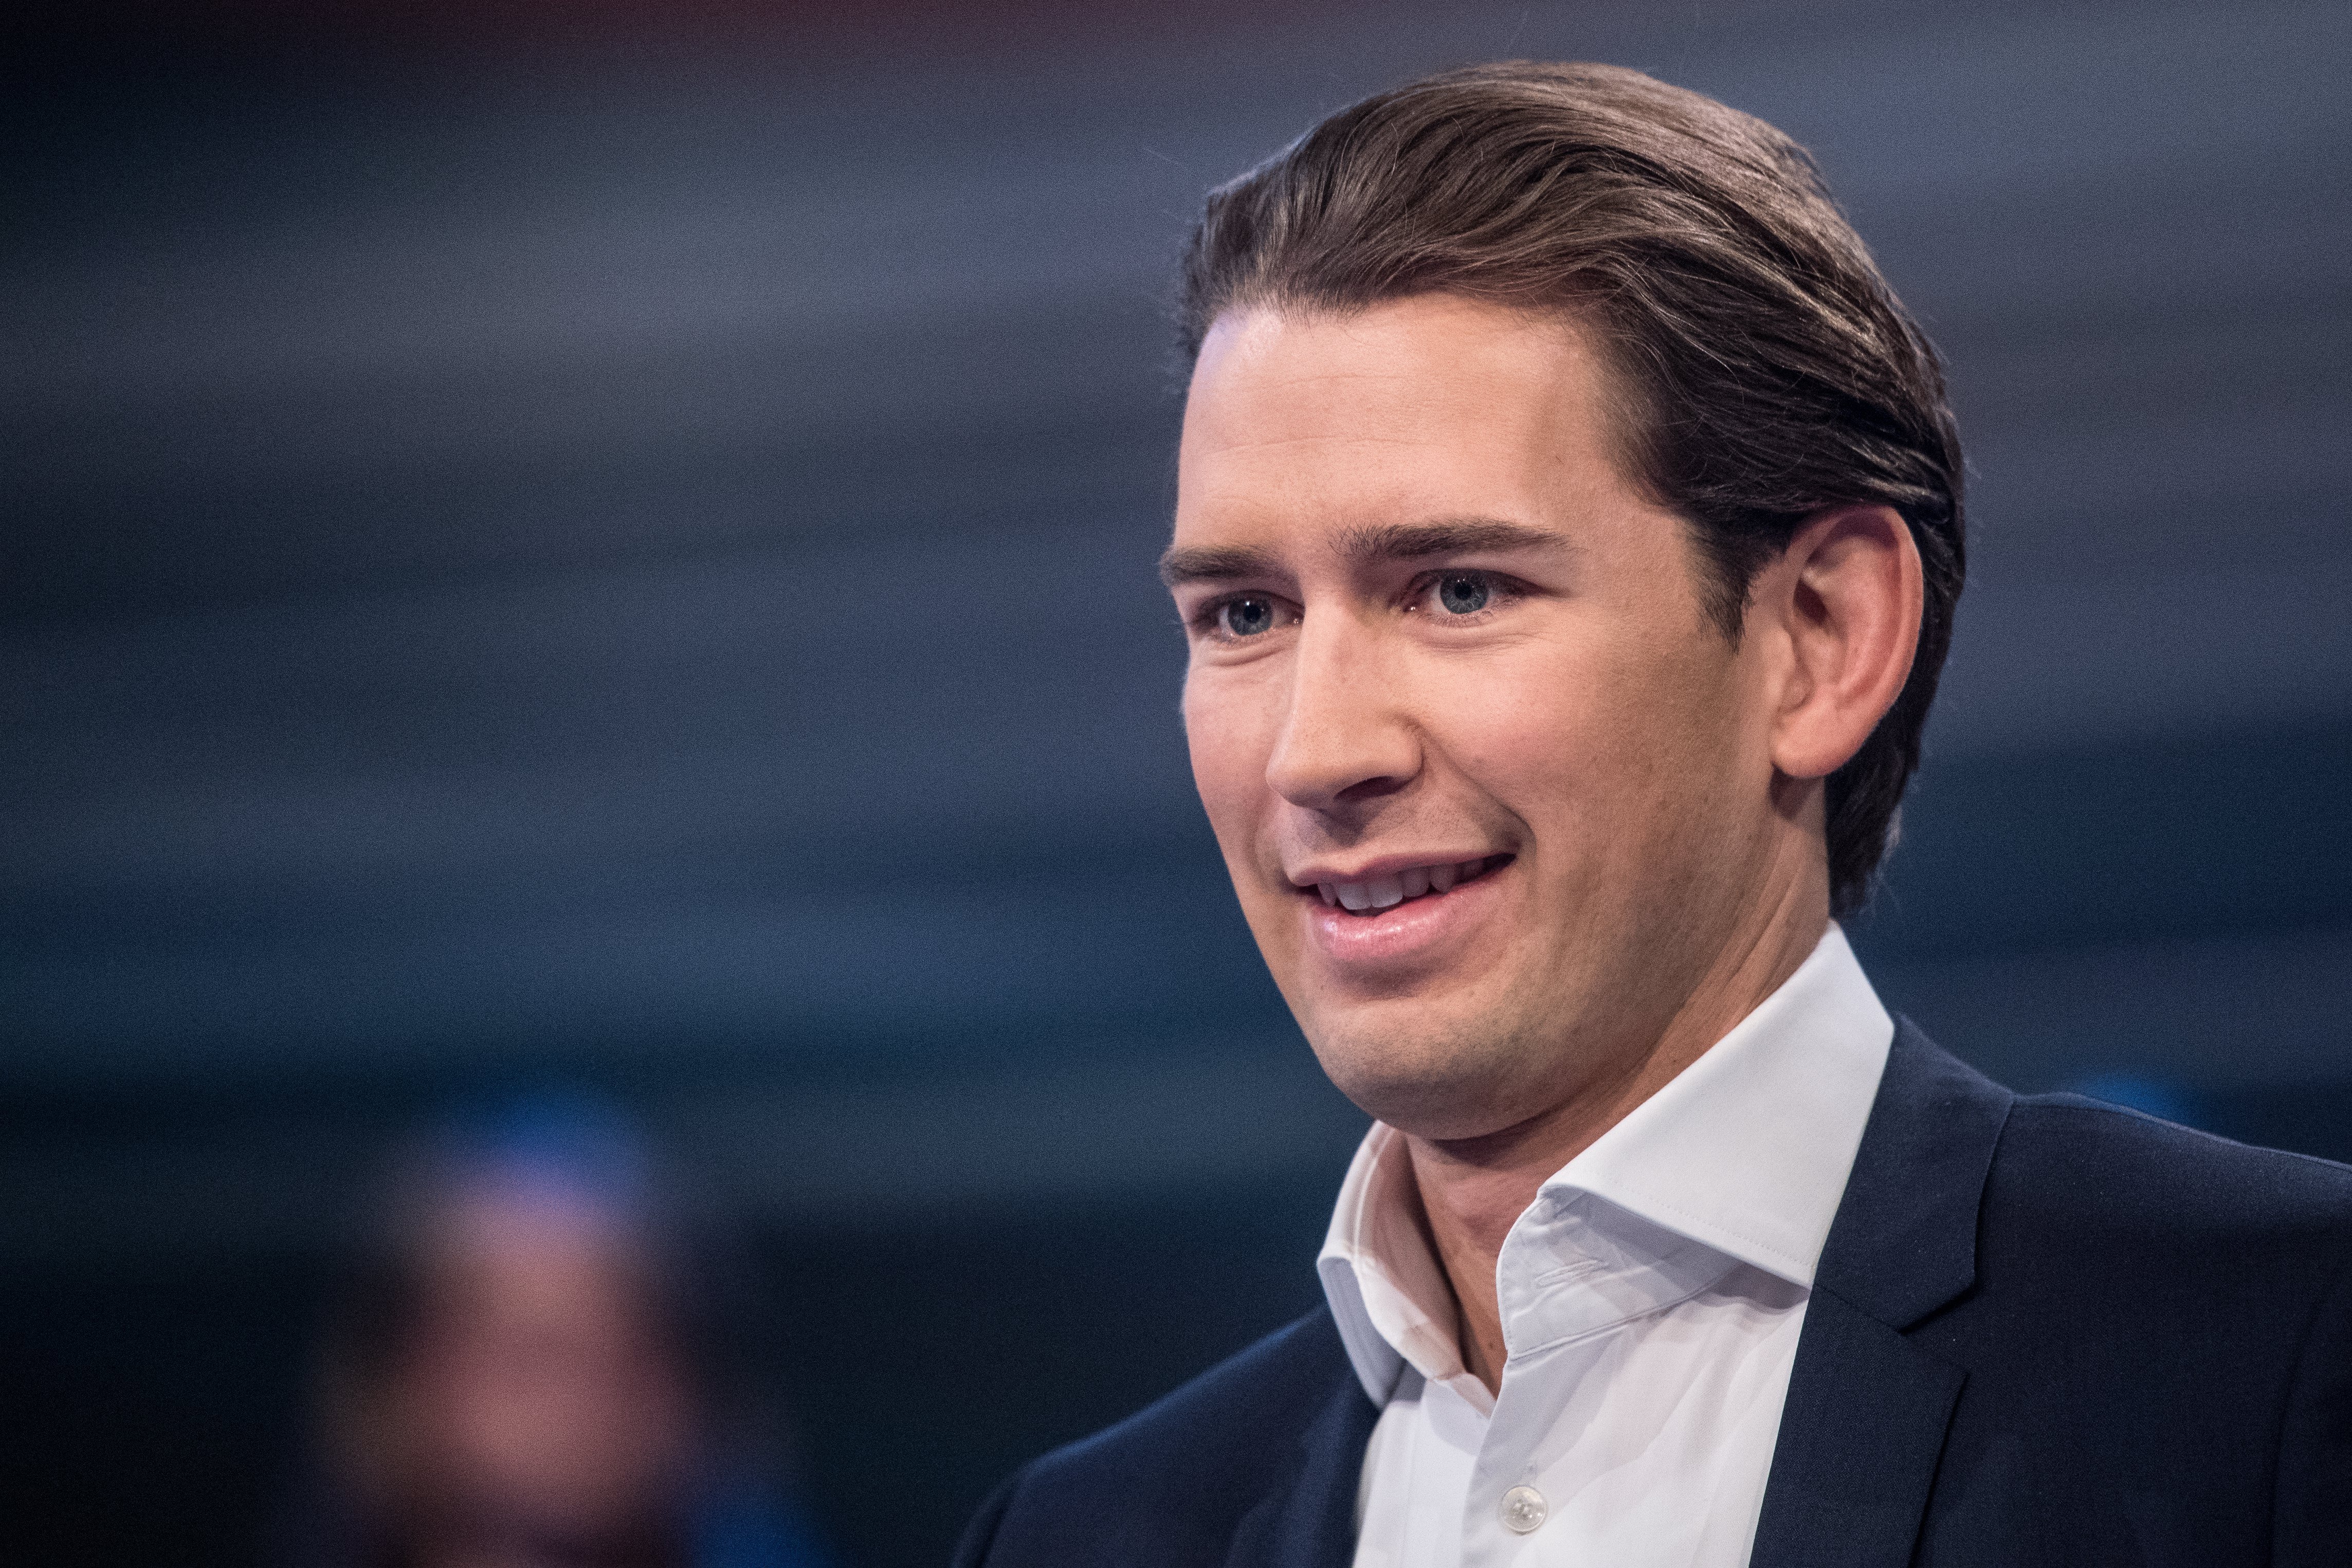 Els ultraconservadors austríacs assumeixen la presidència europea